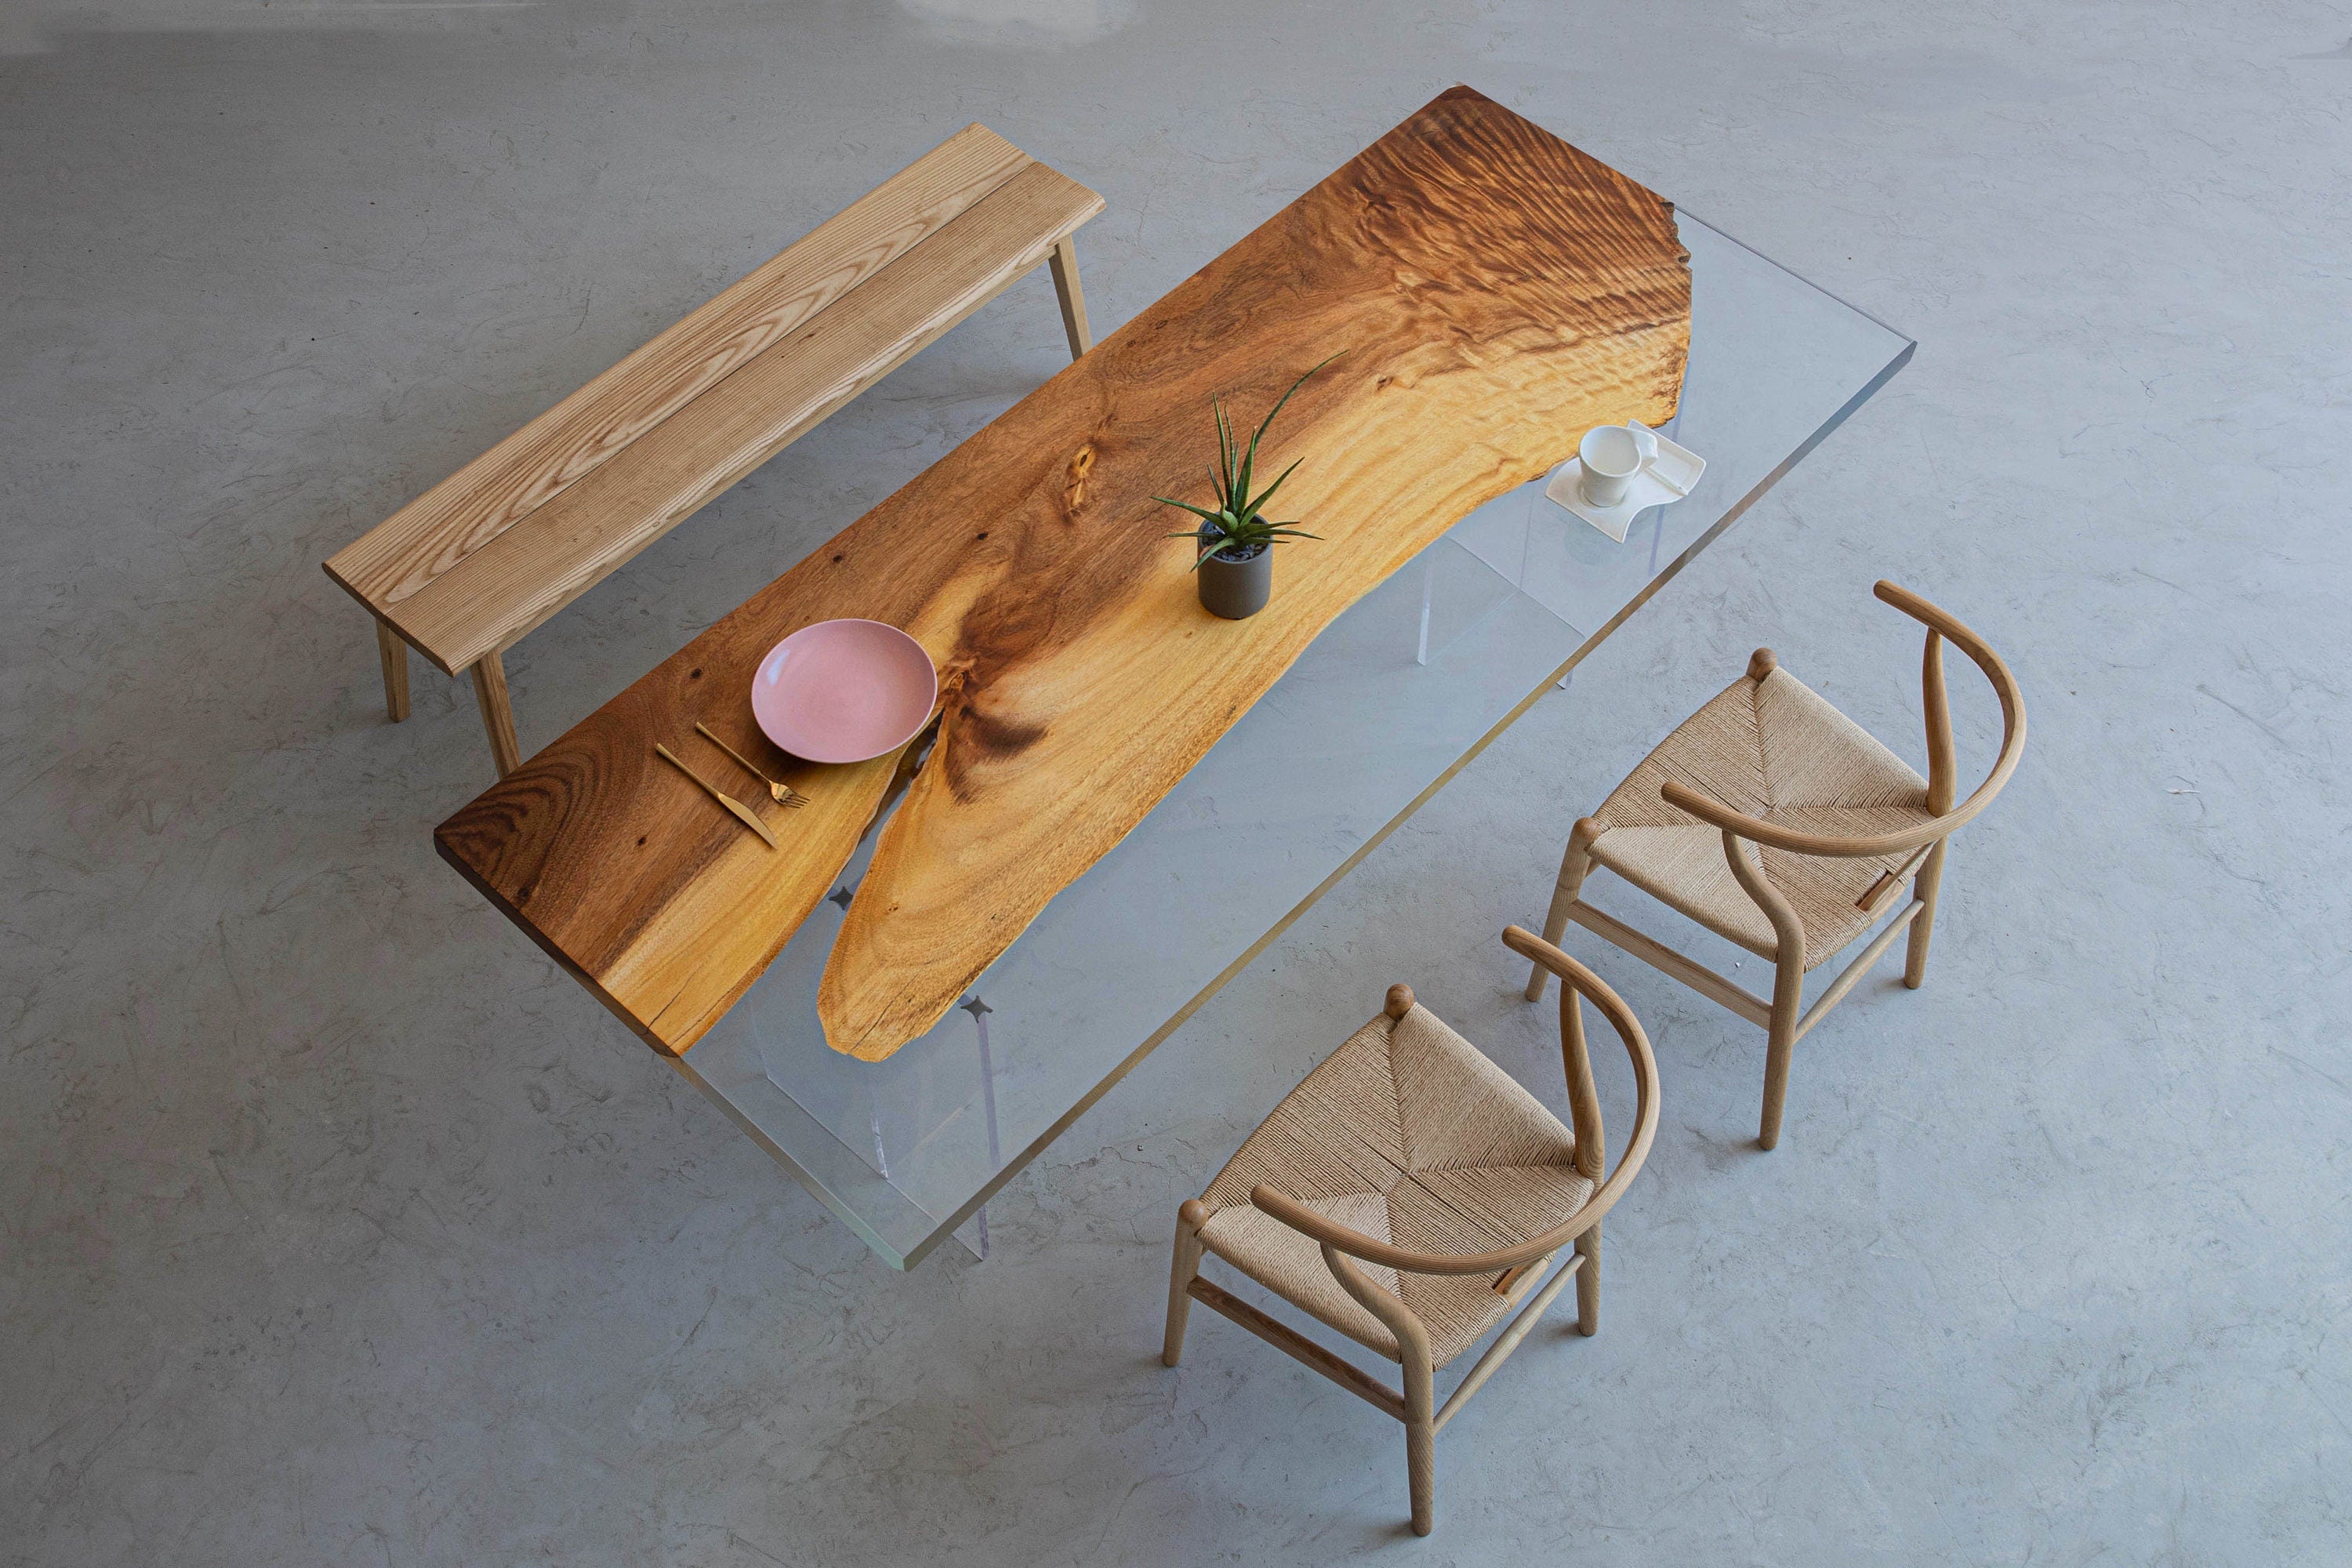 الأعمال الفنية الأساسية سطح الطاولة من راتنجات الإيبوكسي الشفاف، طاولة طعام من الخشب الطبيعي، طاولة قهوة